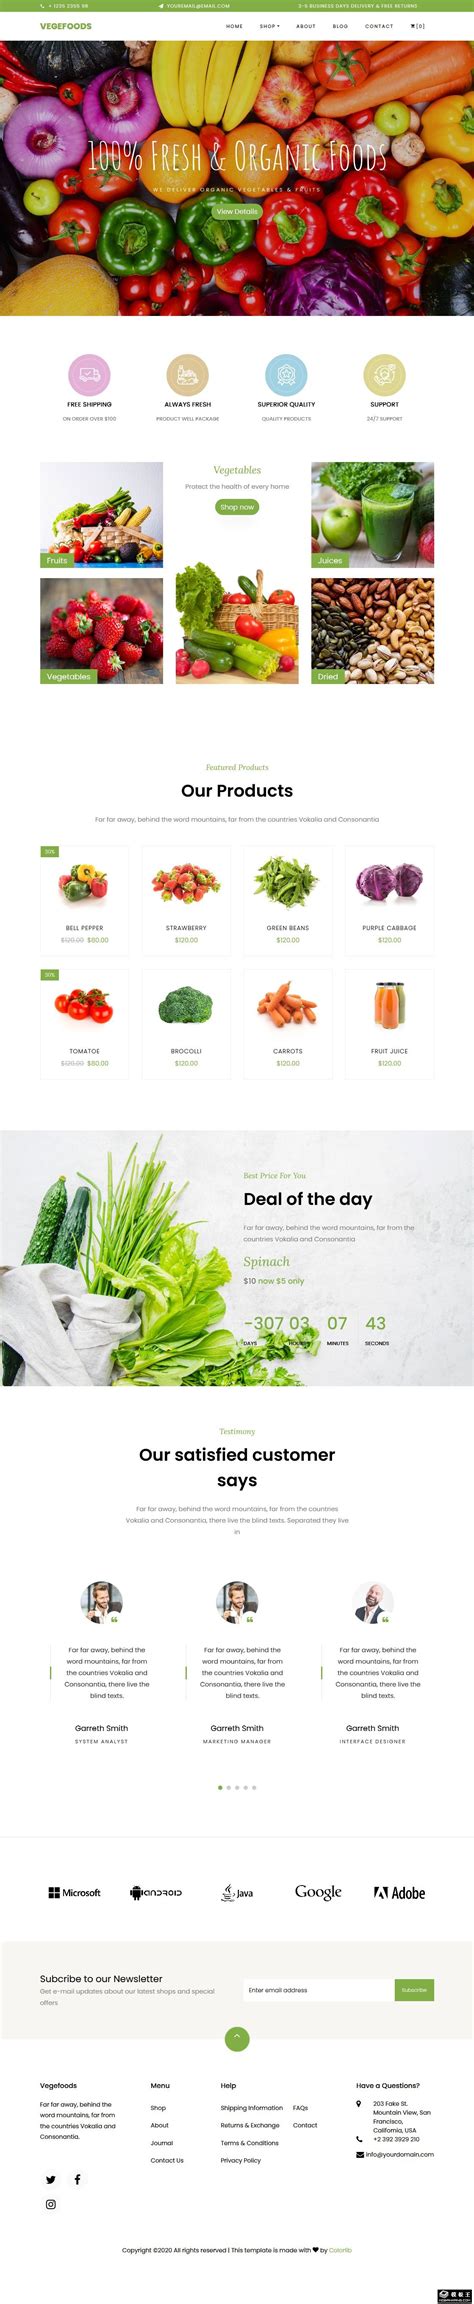 蔬菜电商网站模板 界面清新可餐的果蔬商城网站模板